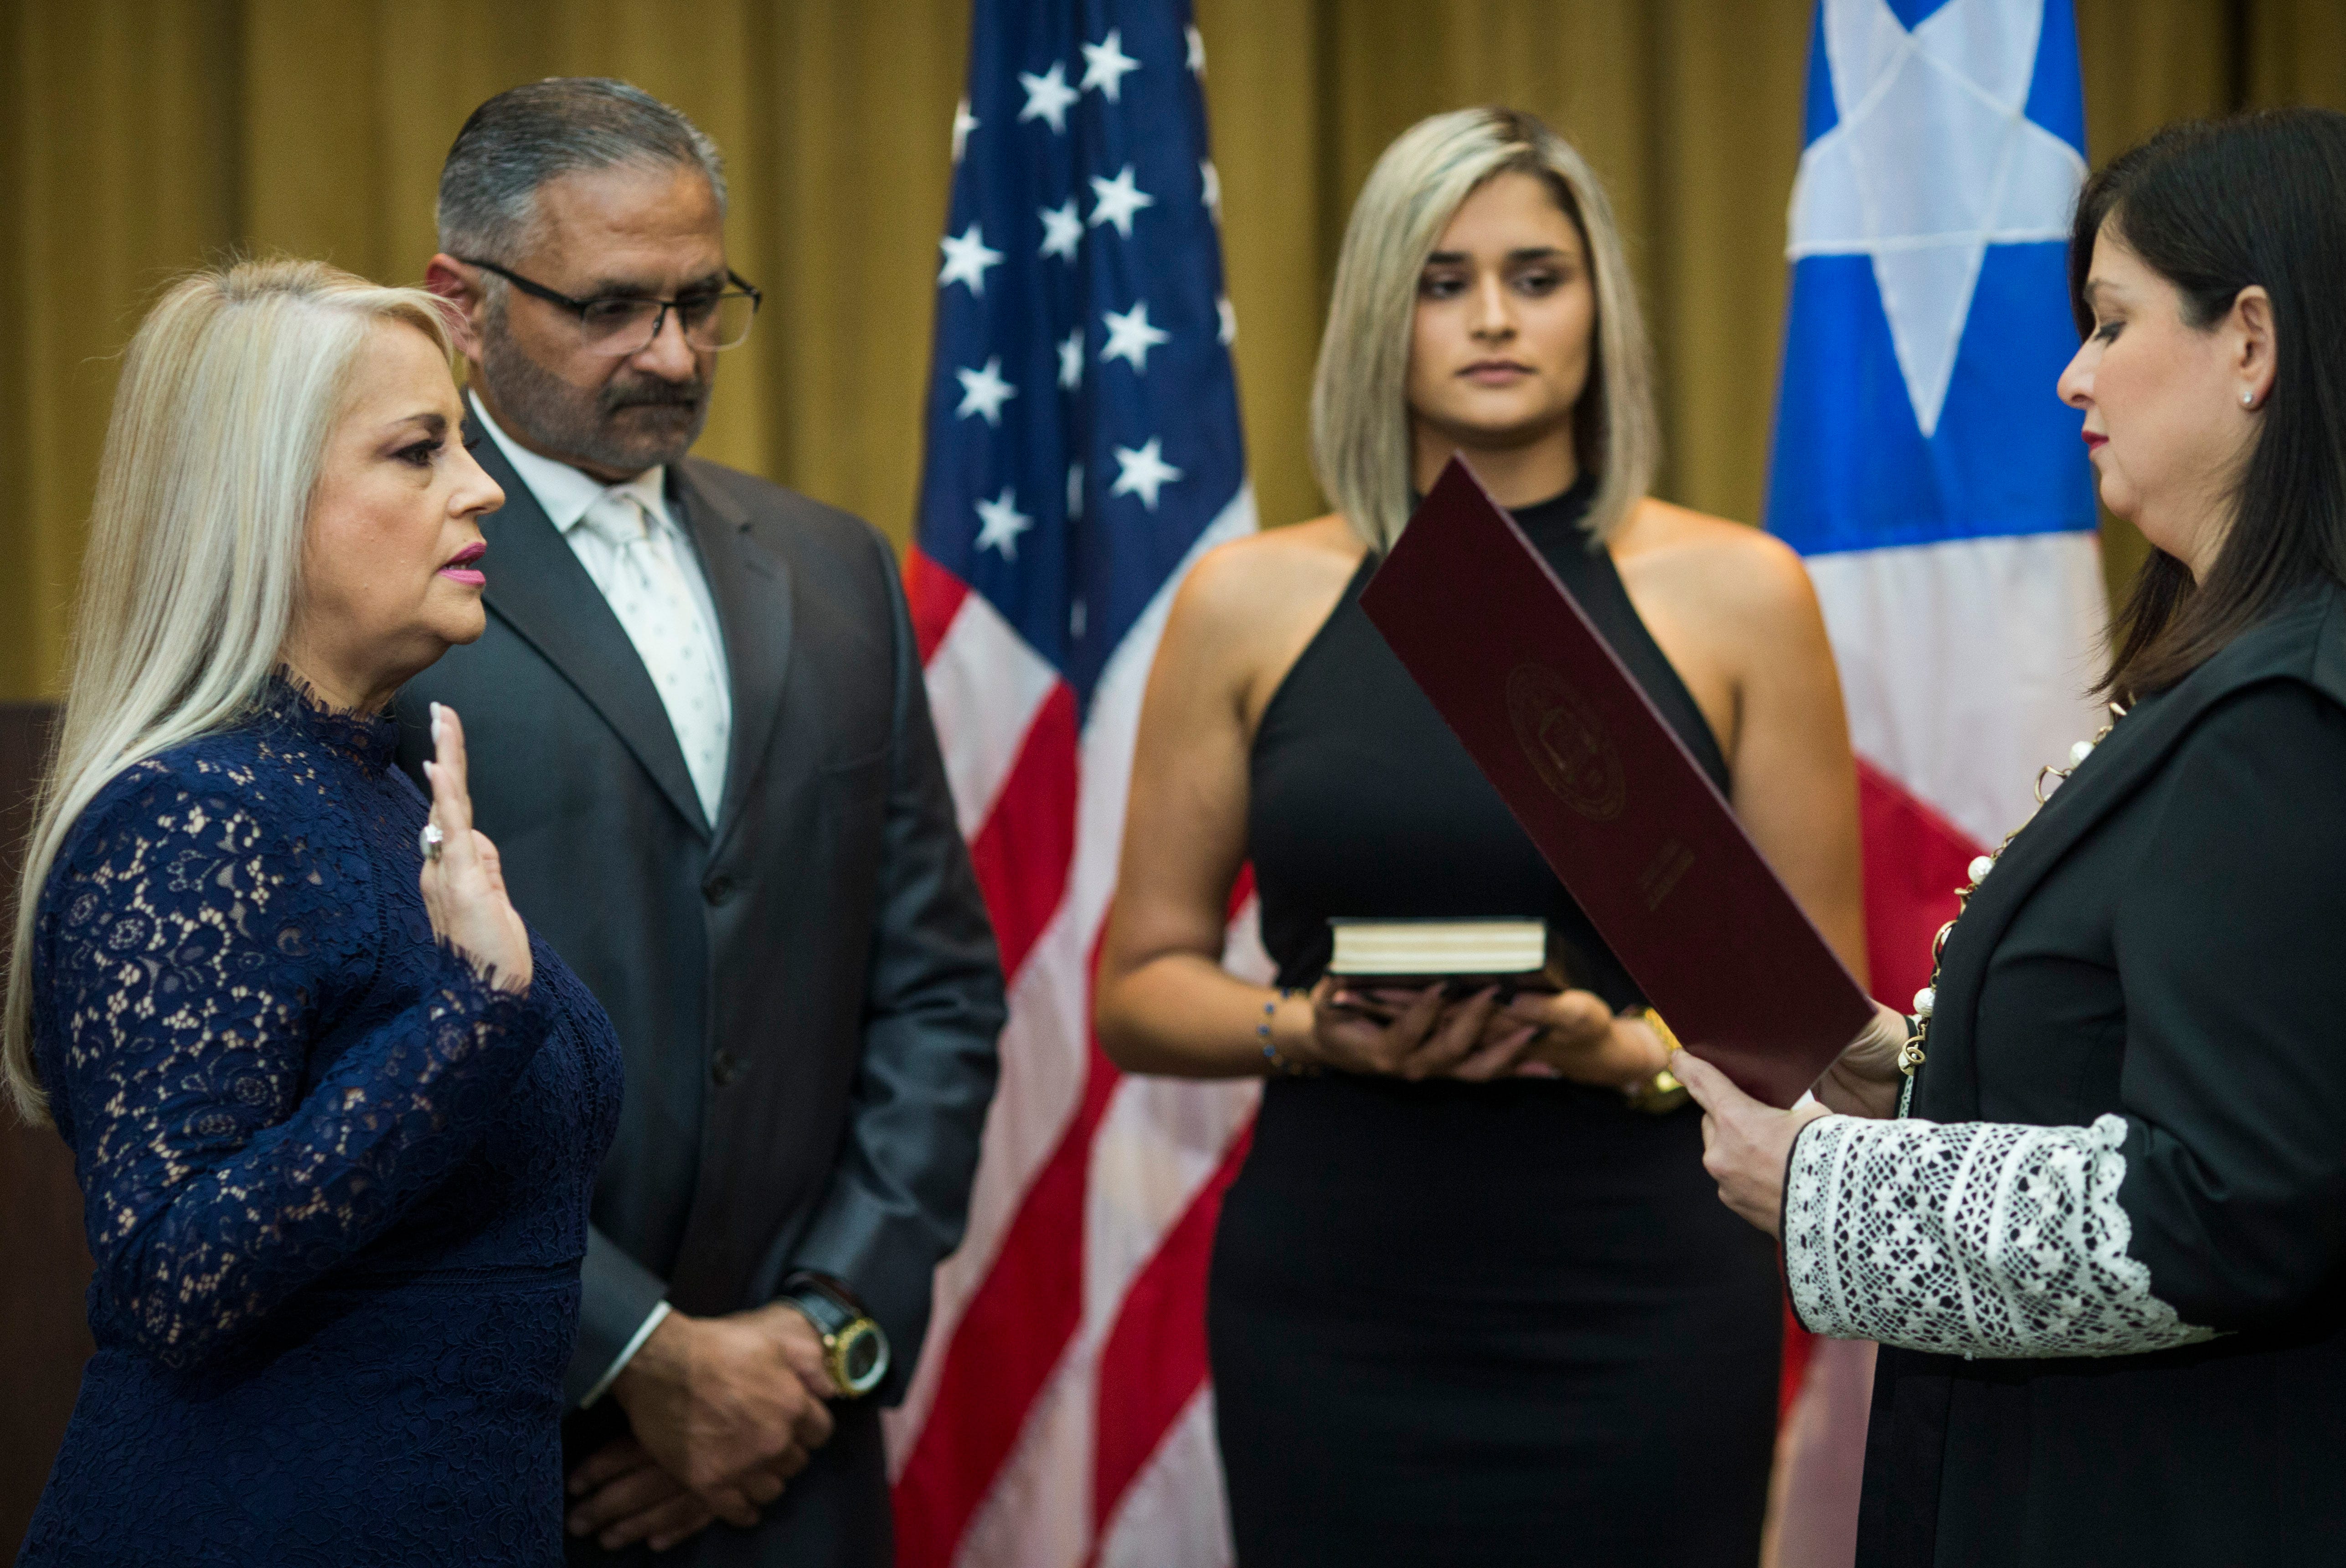 Modernización contar Oceanía Puerto Rico had 3 governors in a week; Wanda Vazquez seeks stability